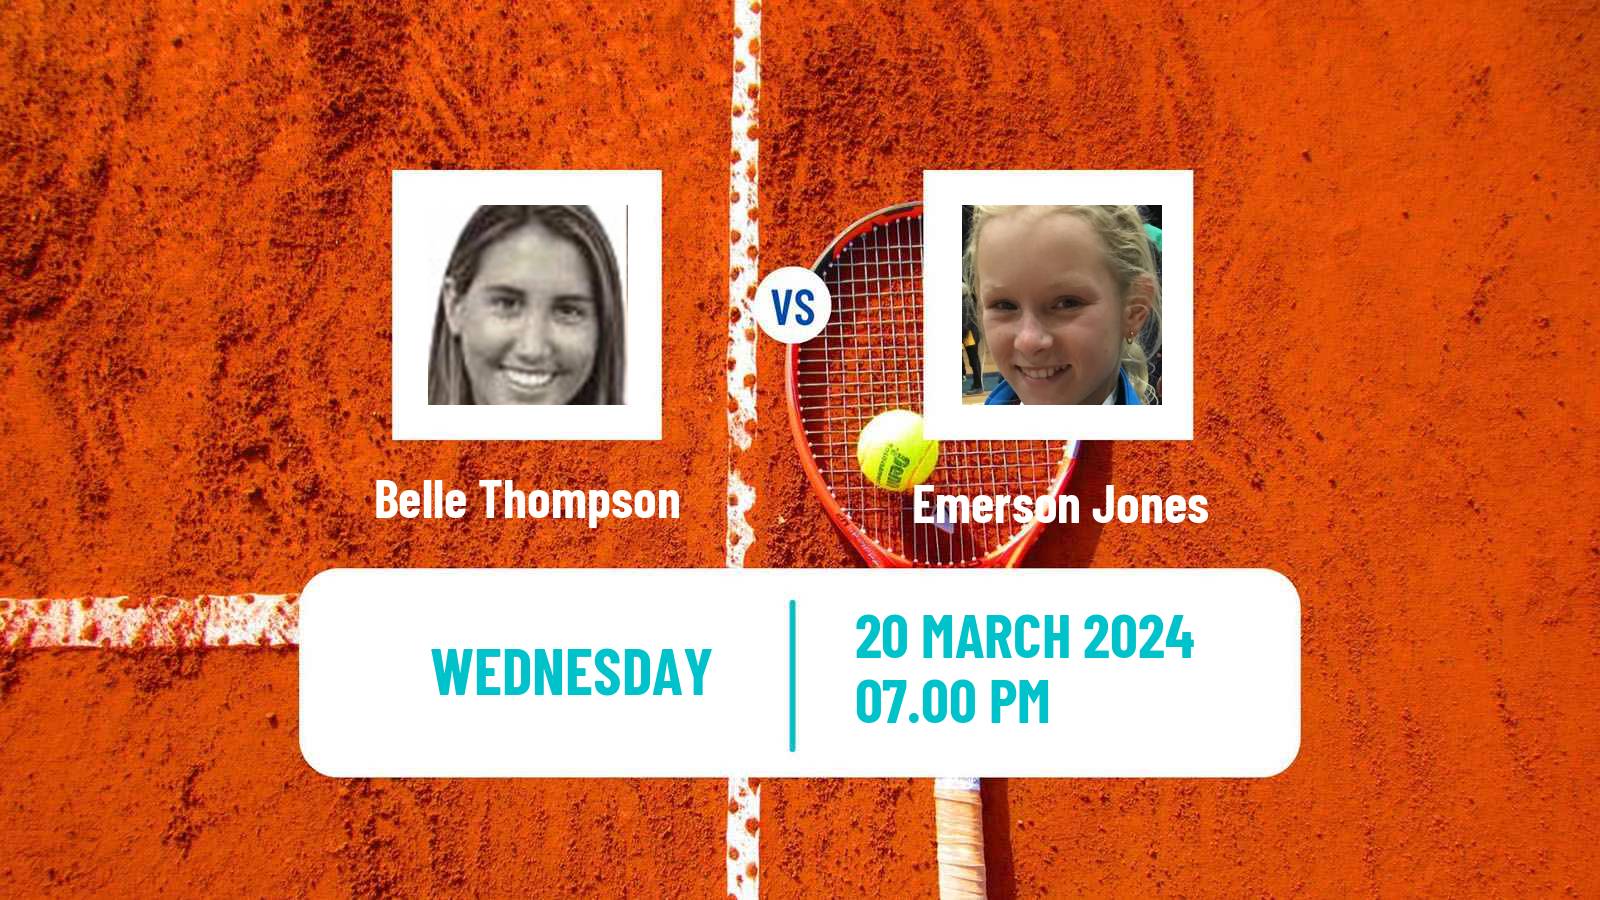 Tennis ITF W35 Swan Hill Women Belle Thompson - Emerson Jones